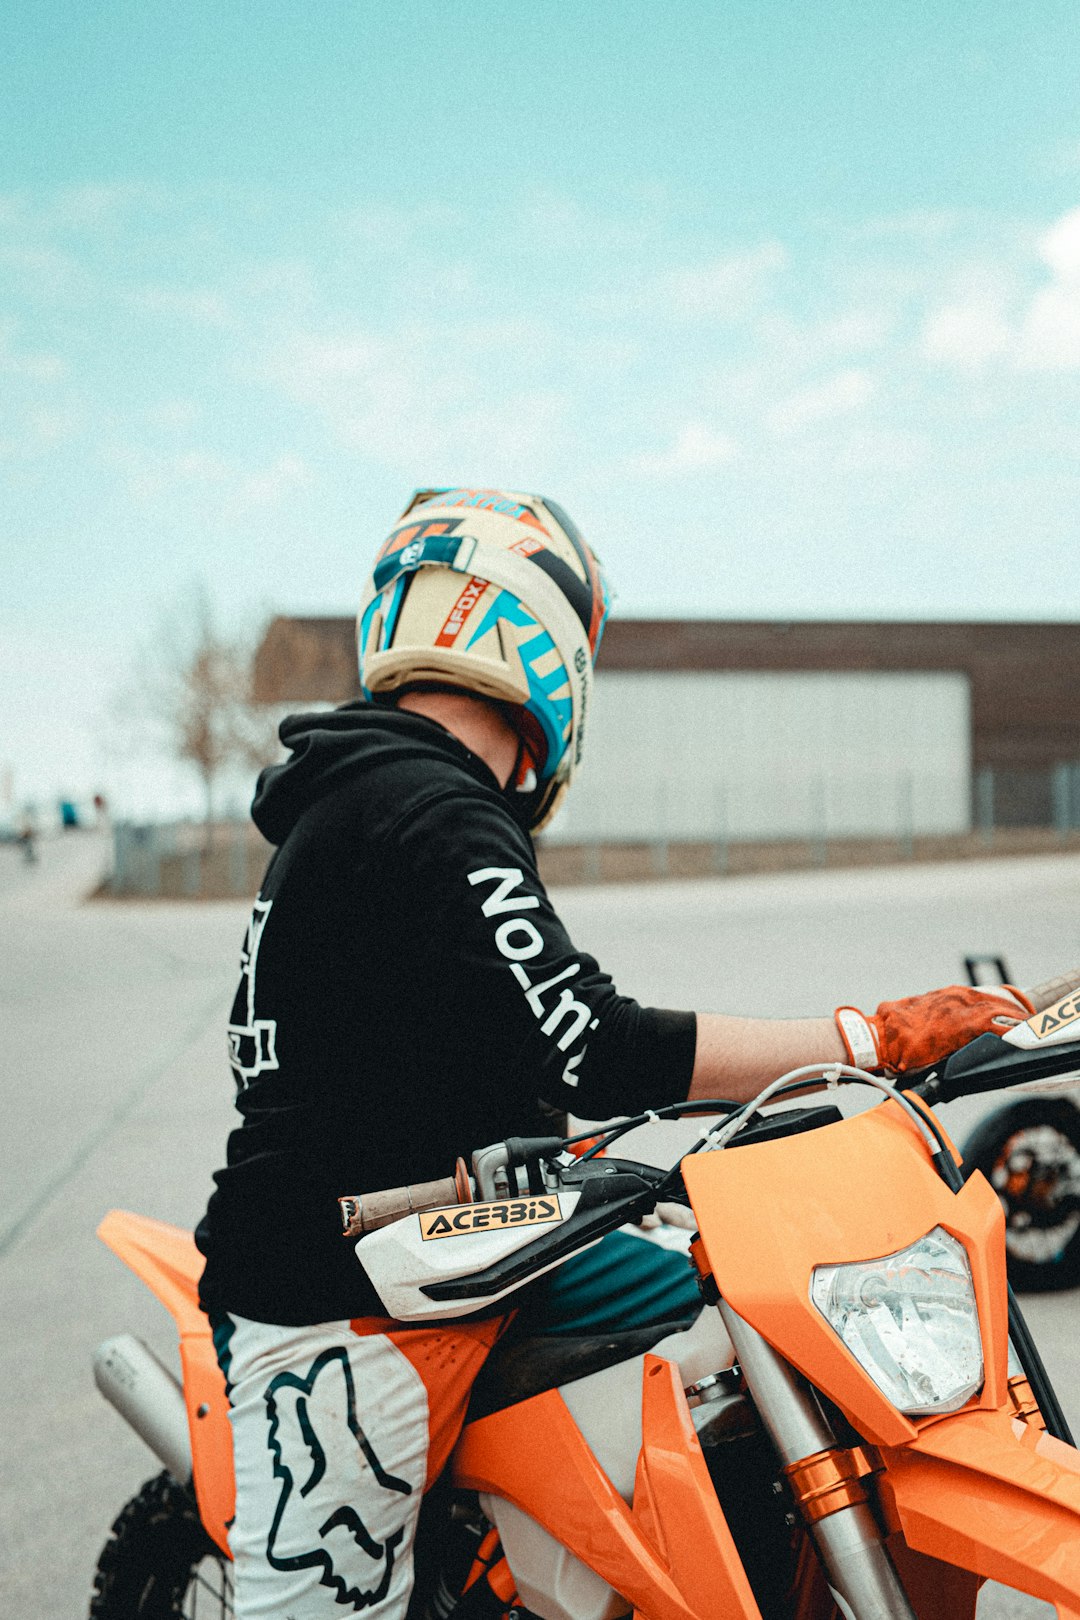 man in black and orange jacket riding orange motorcycle